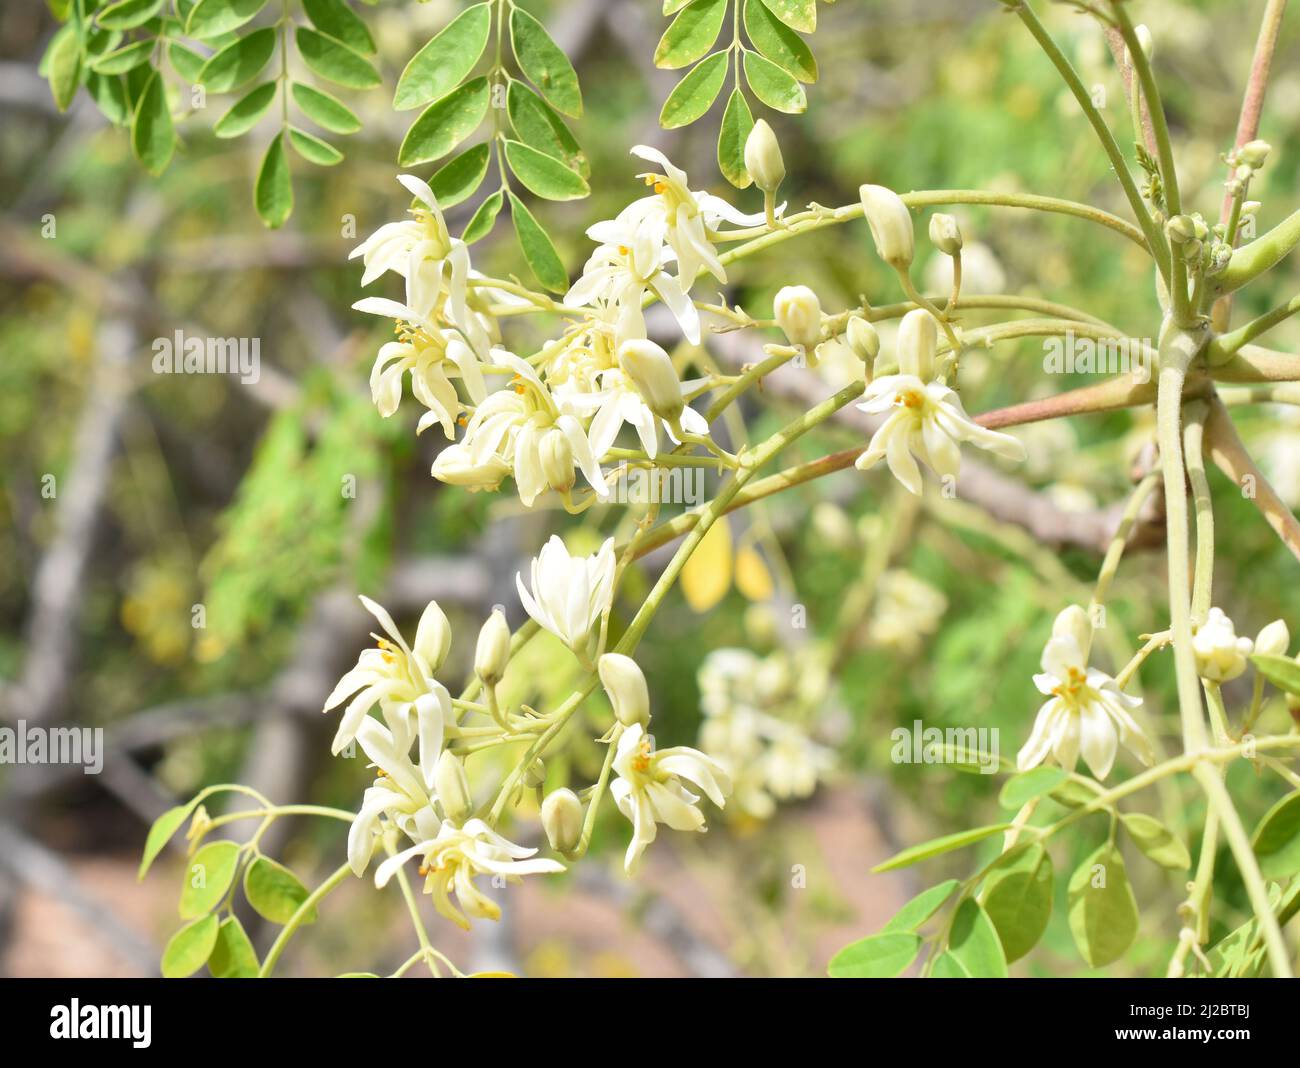 Nahaufnahme von weißen, gelbblühenden Blüten auf einem Drumstick-Baum Moringa oleifera Stockfoto